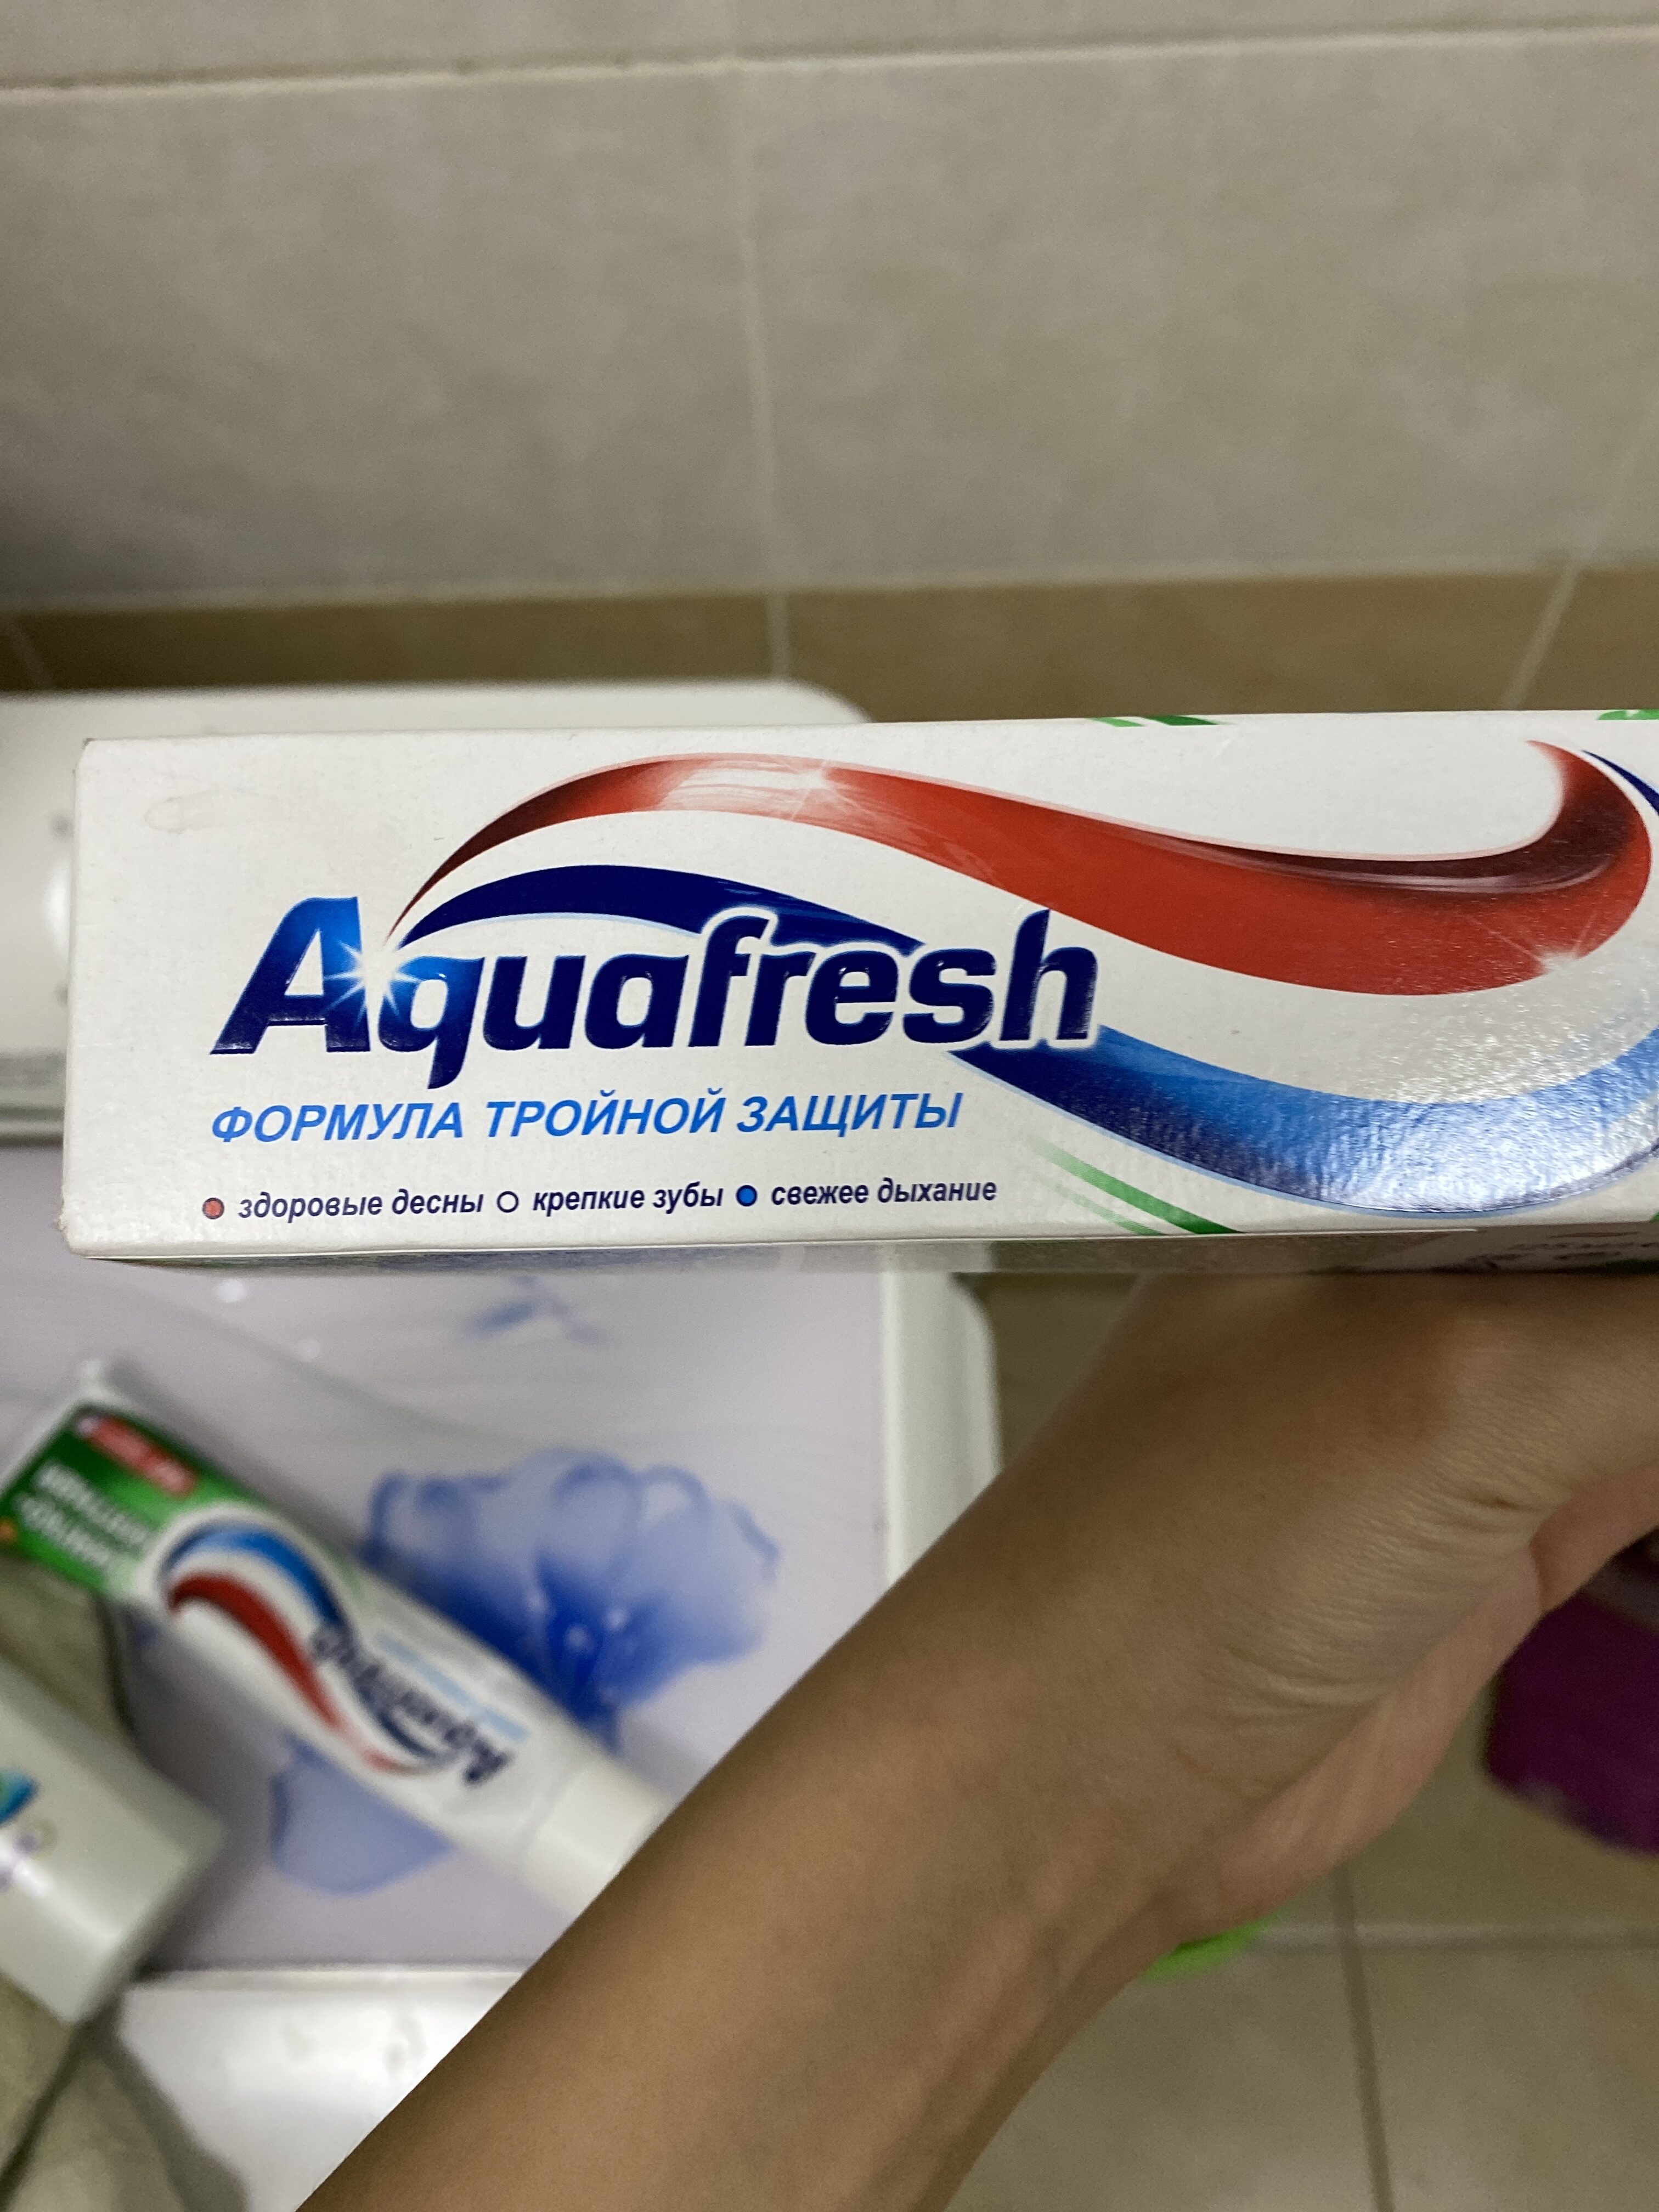 aquafresh - Product - en